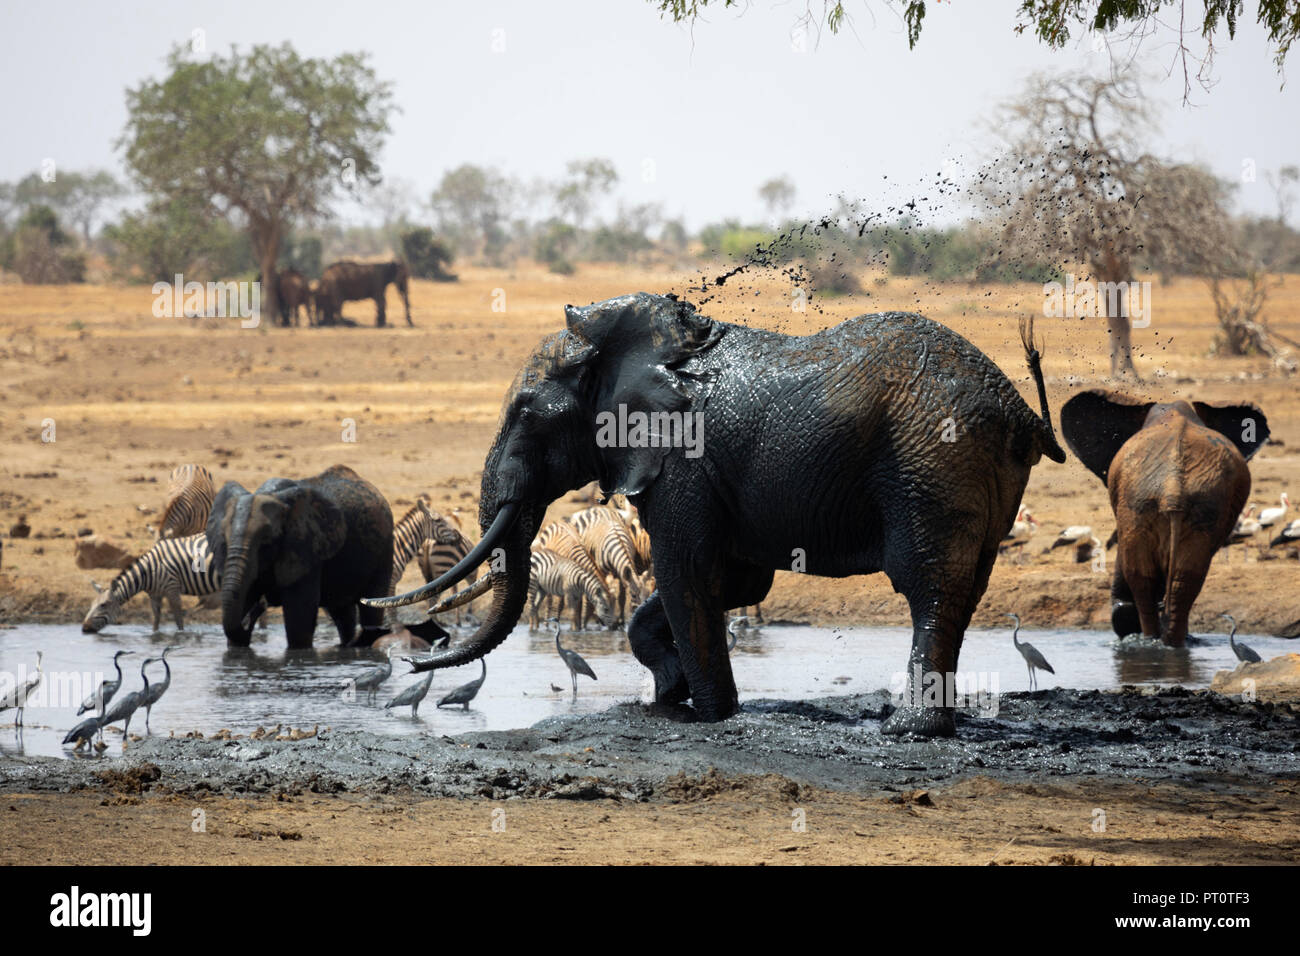 Parco nazionale orientale di tsavo, Kenya, Africa: un elefante africano di cooling off in corrispondenza di un foro di irrigazione sulla savana secca nel sole del pomeriggio Foto Stock